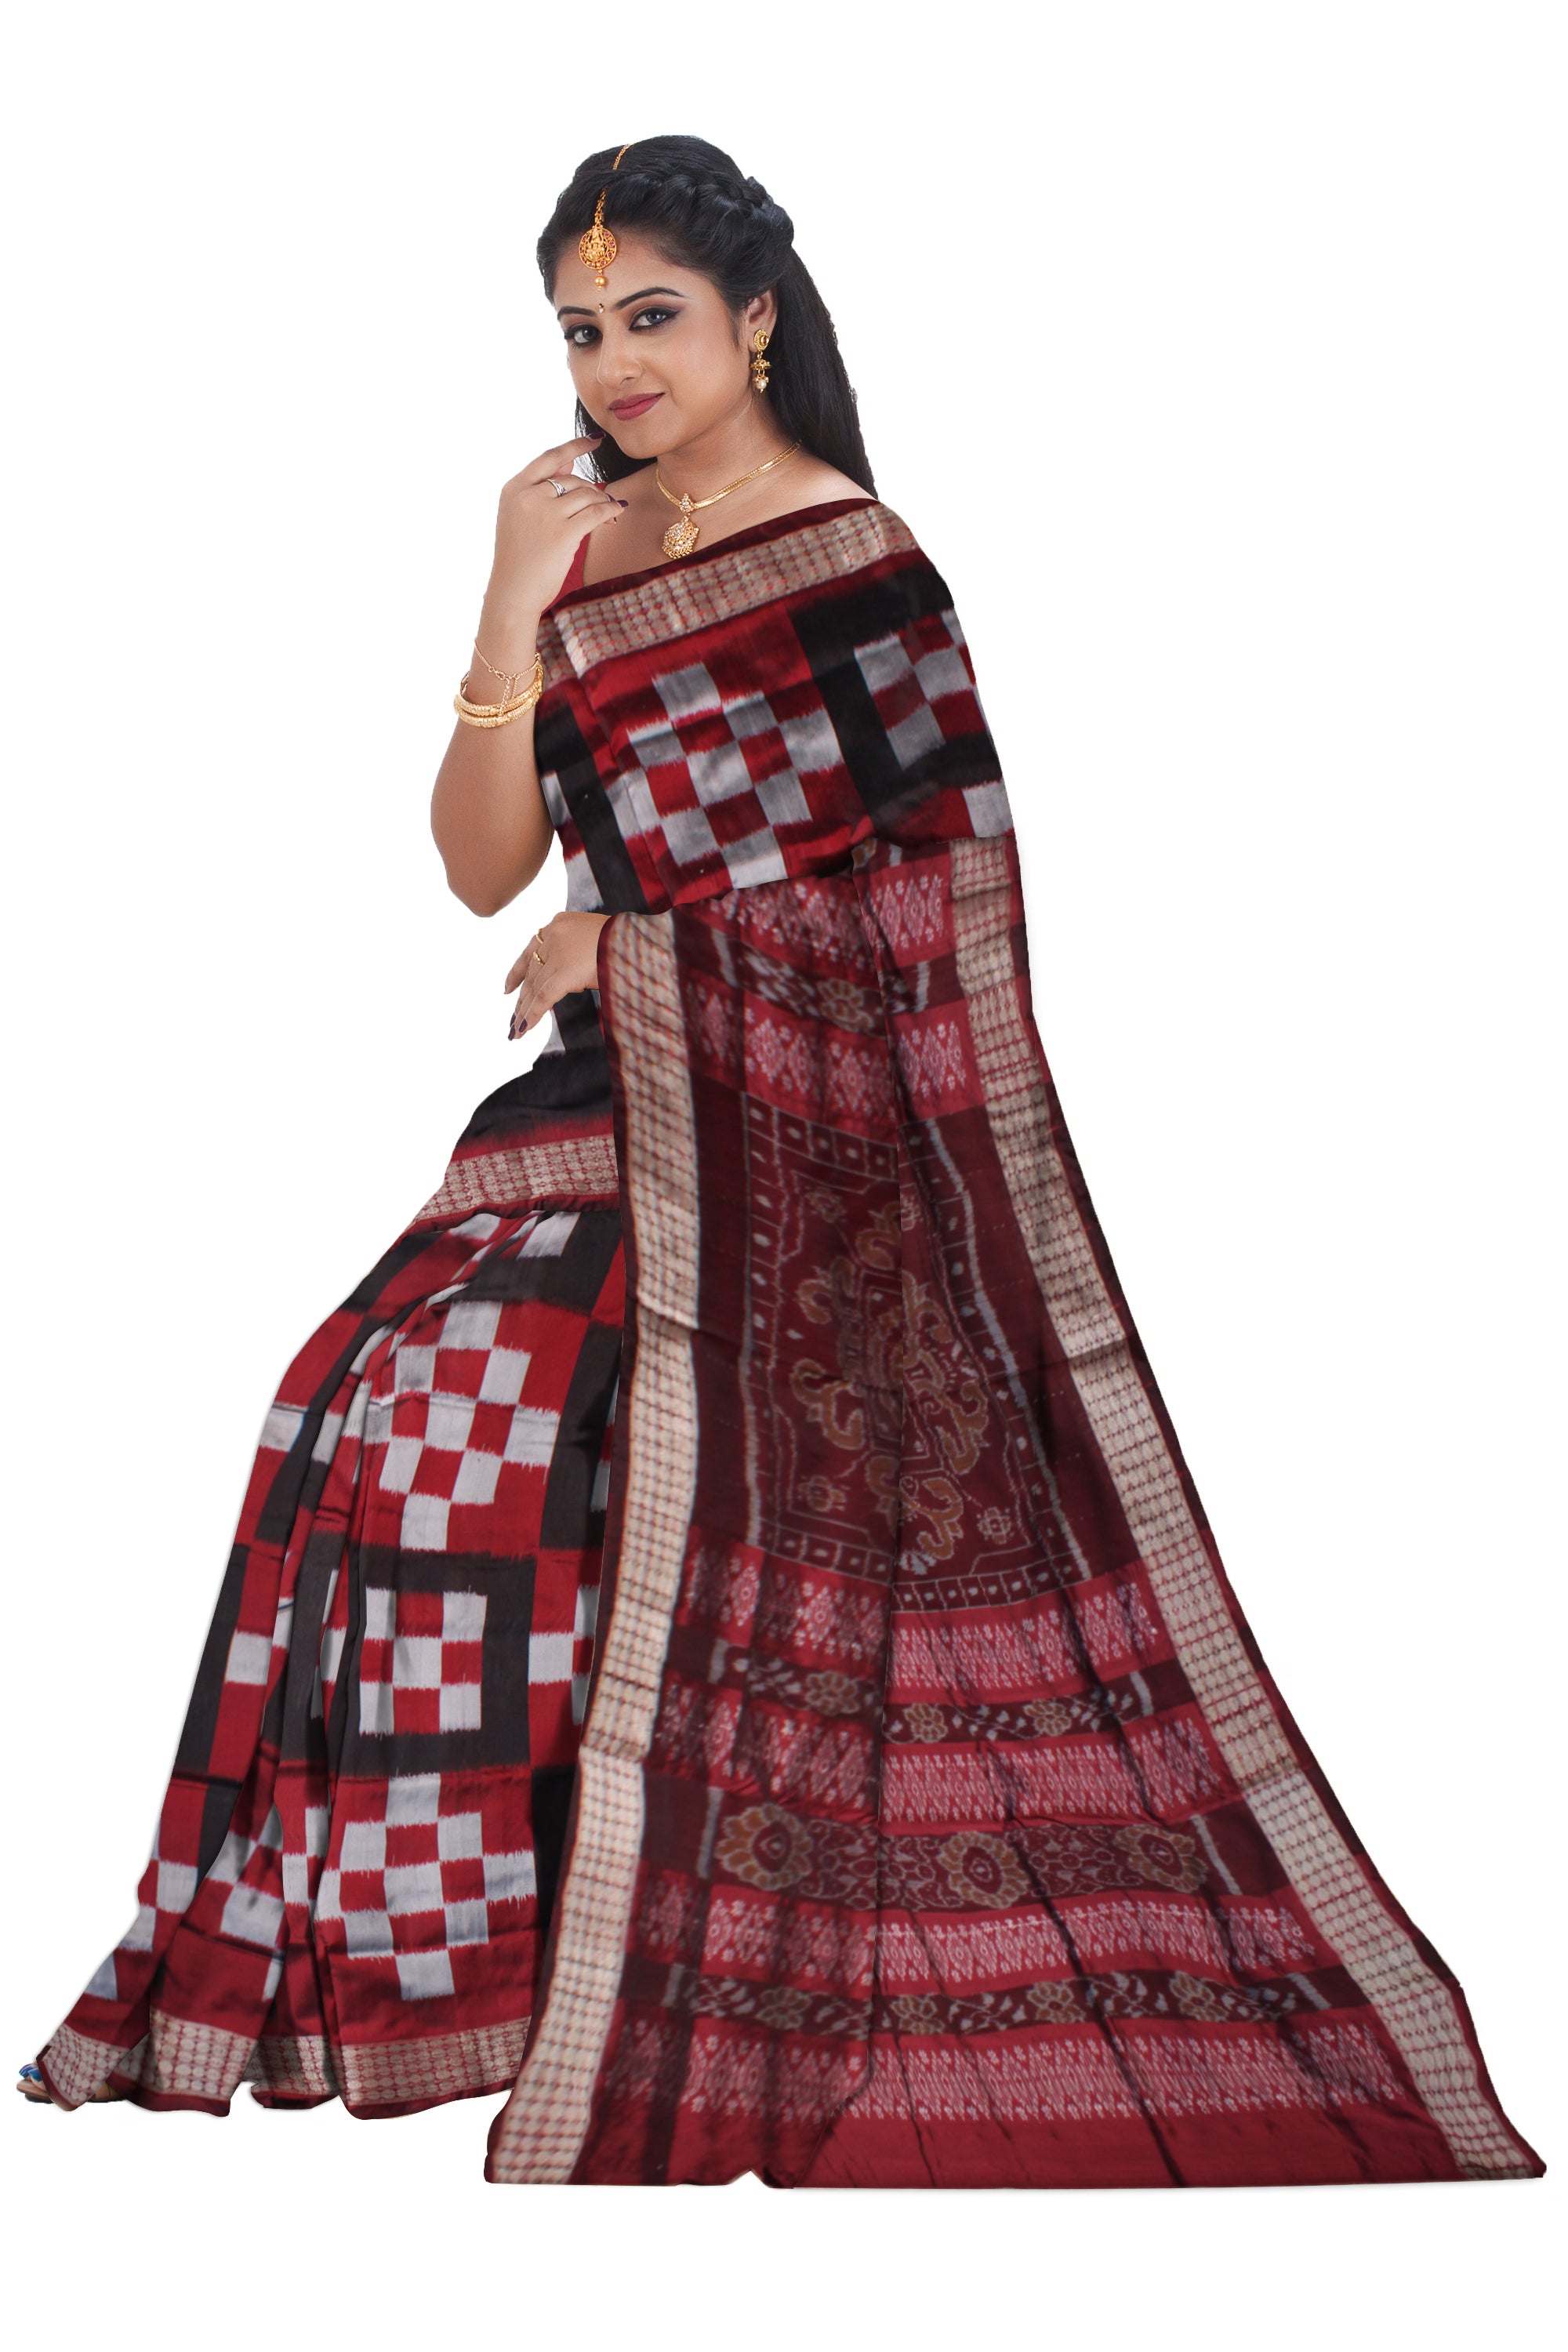 Whole body pasapali pattern pata saree. - Koshali Arts & Crafts Enterprise